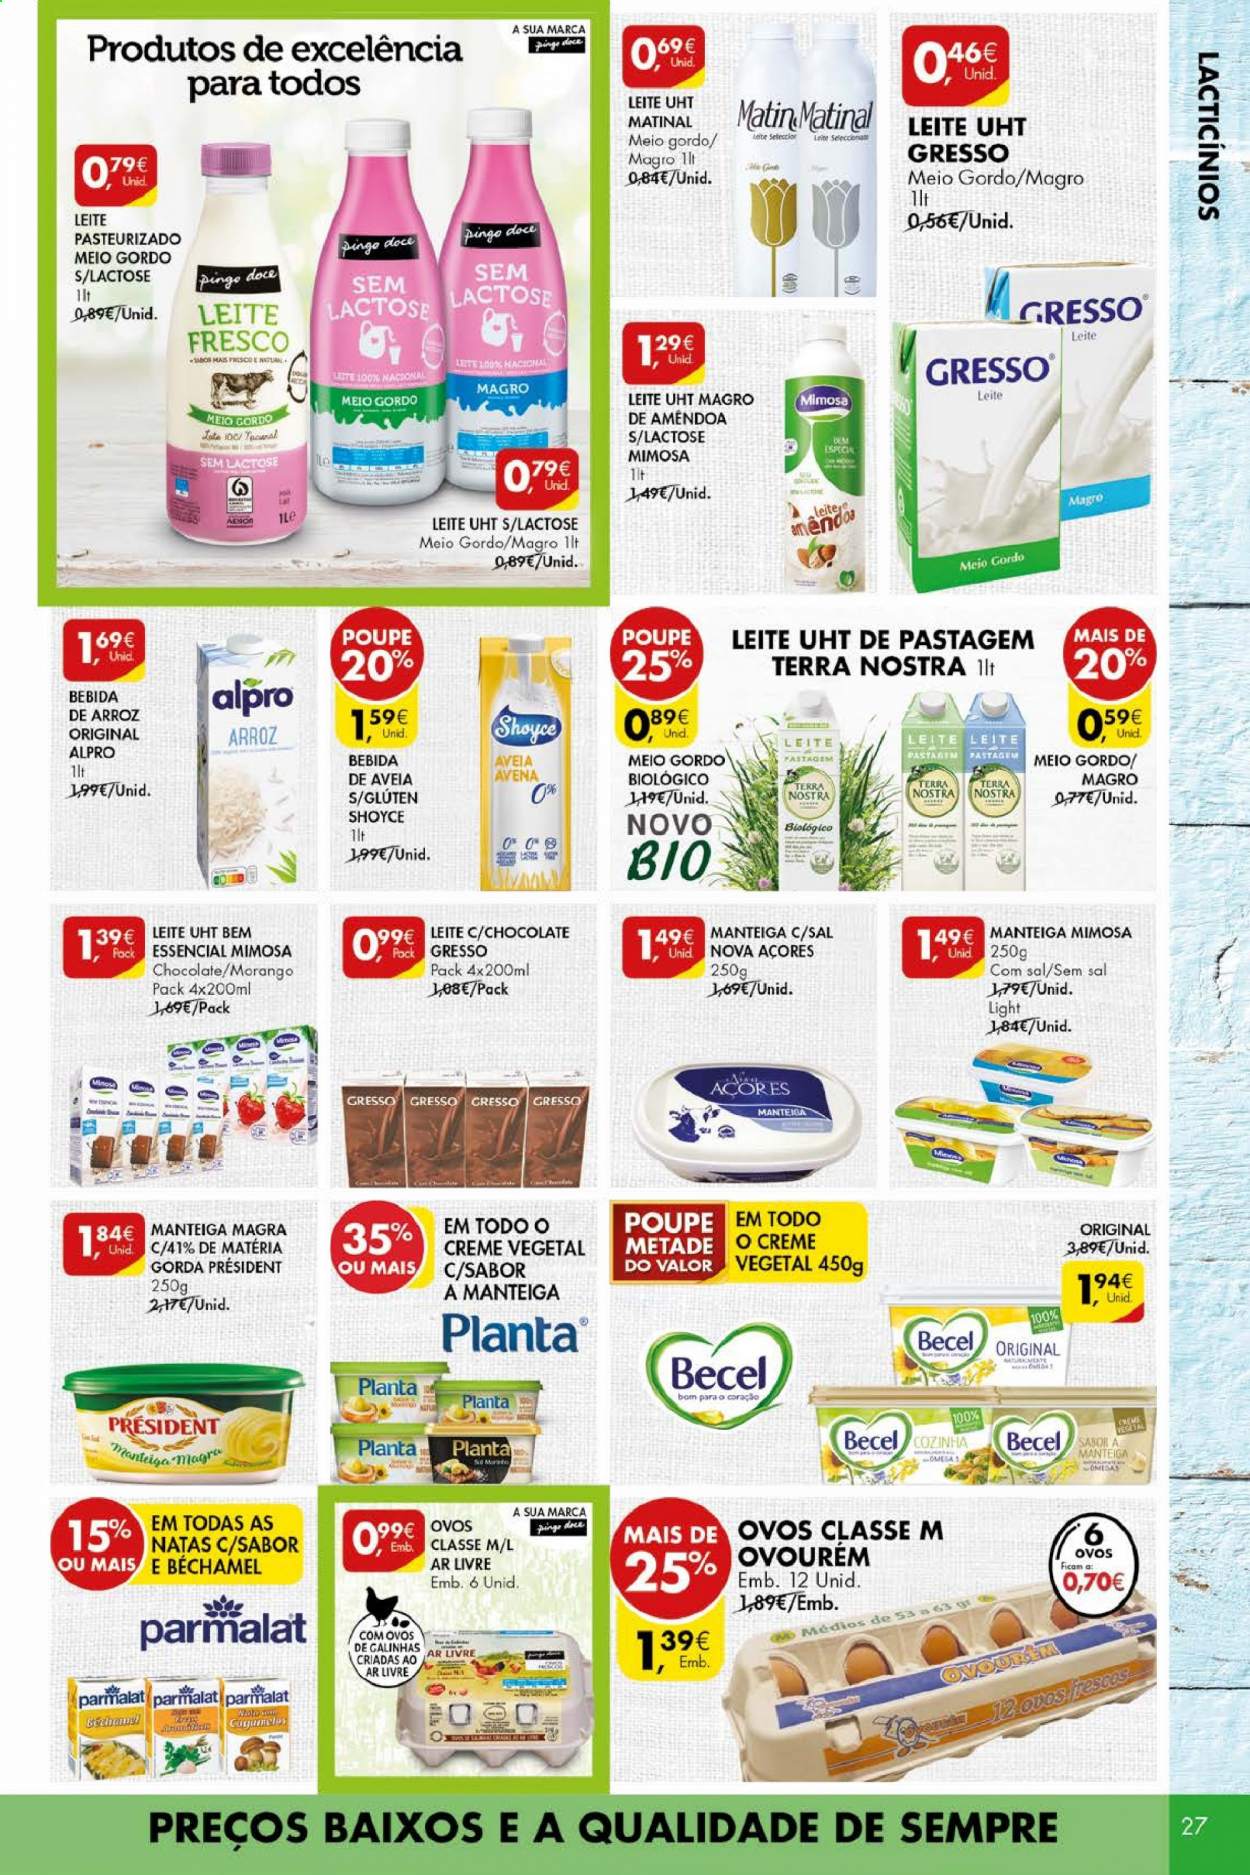 thumbnail - Folheto Pingo Doce - 11.5.2021 - 17.5.2021 - Produtos em promoção - Mimosa, bebida de arroz, manteiga, Becel. Página 27.